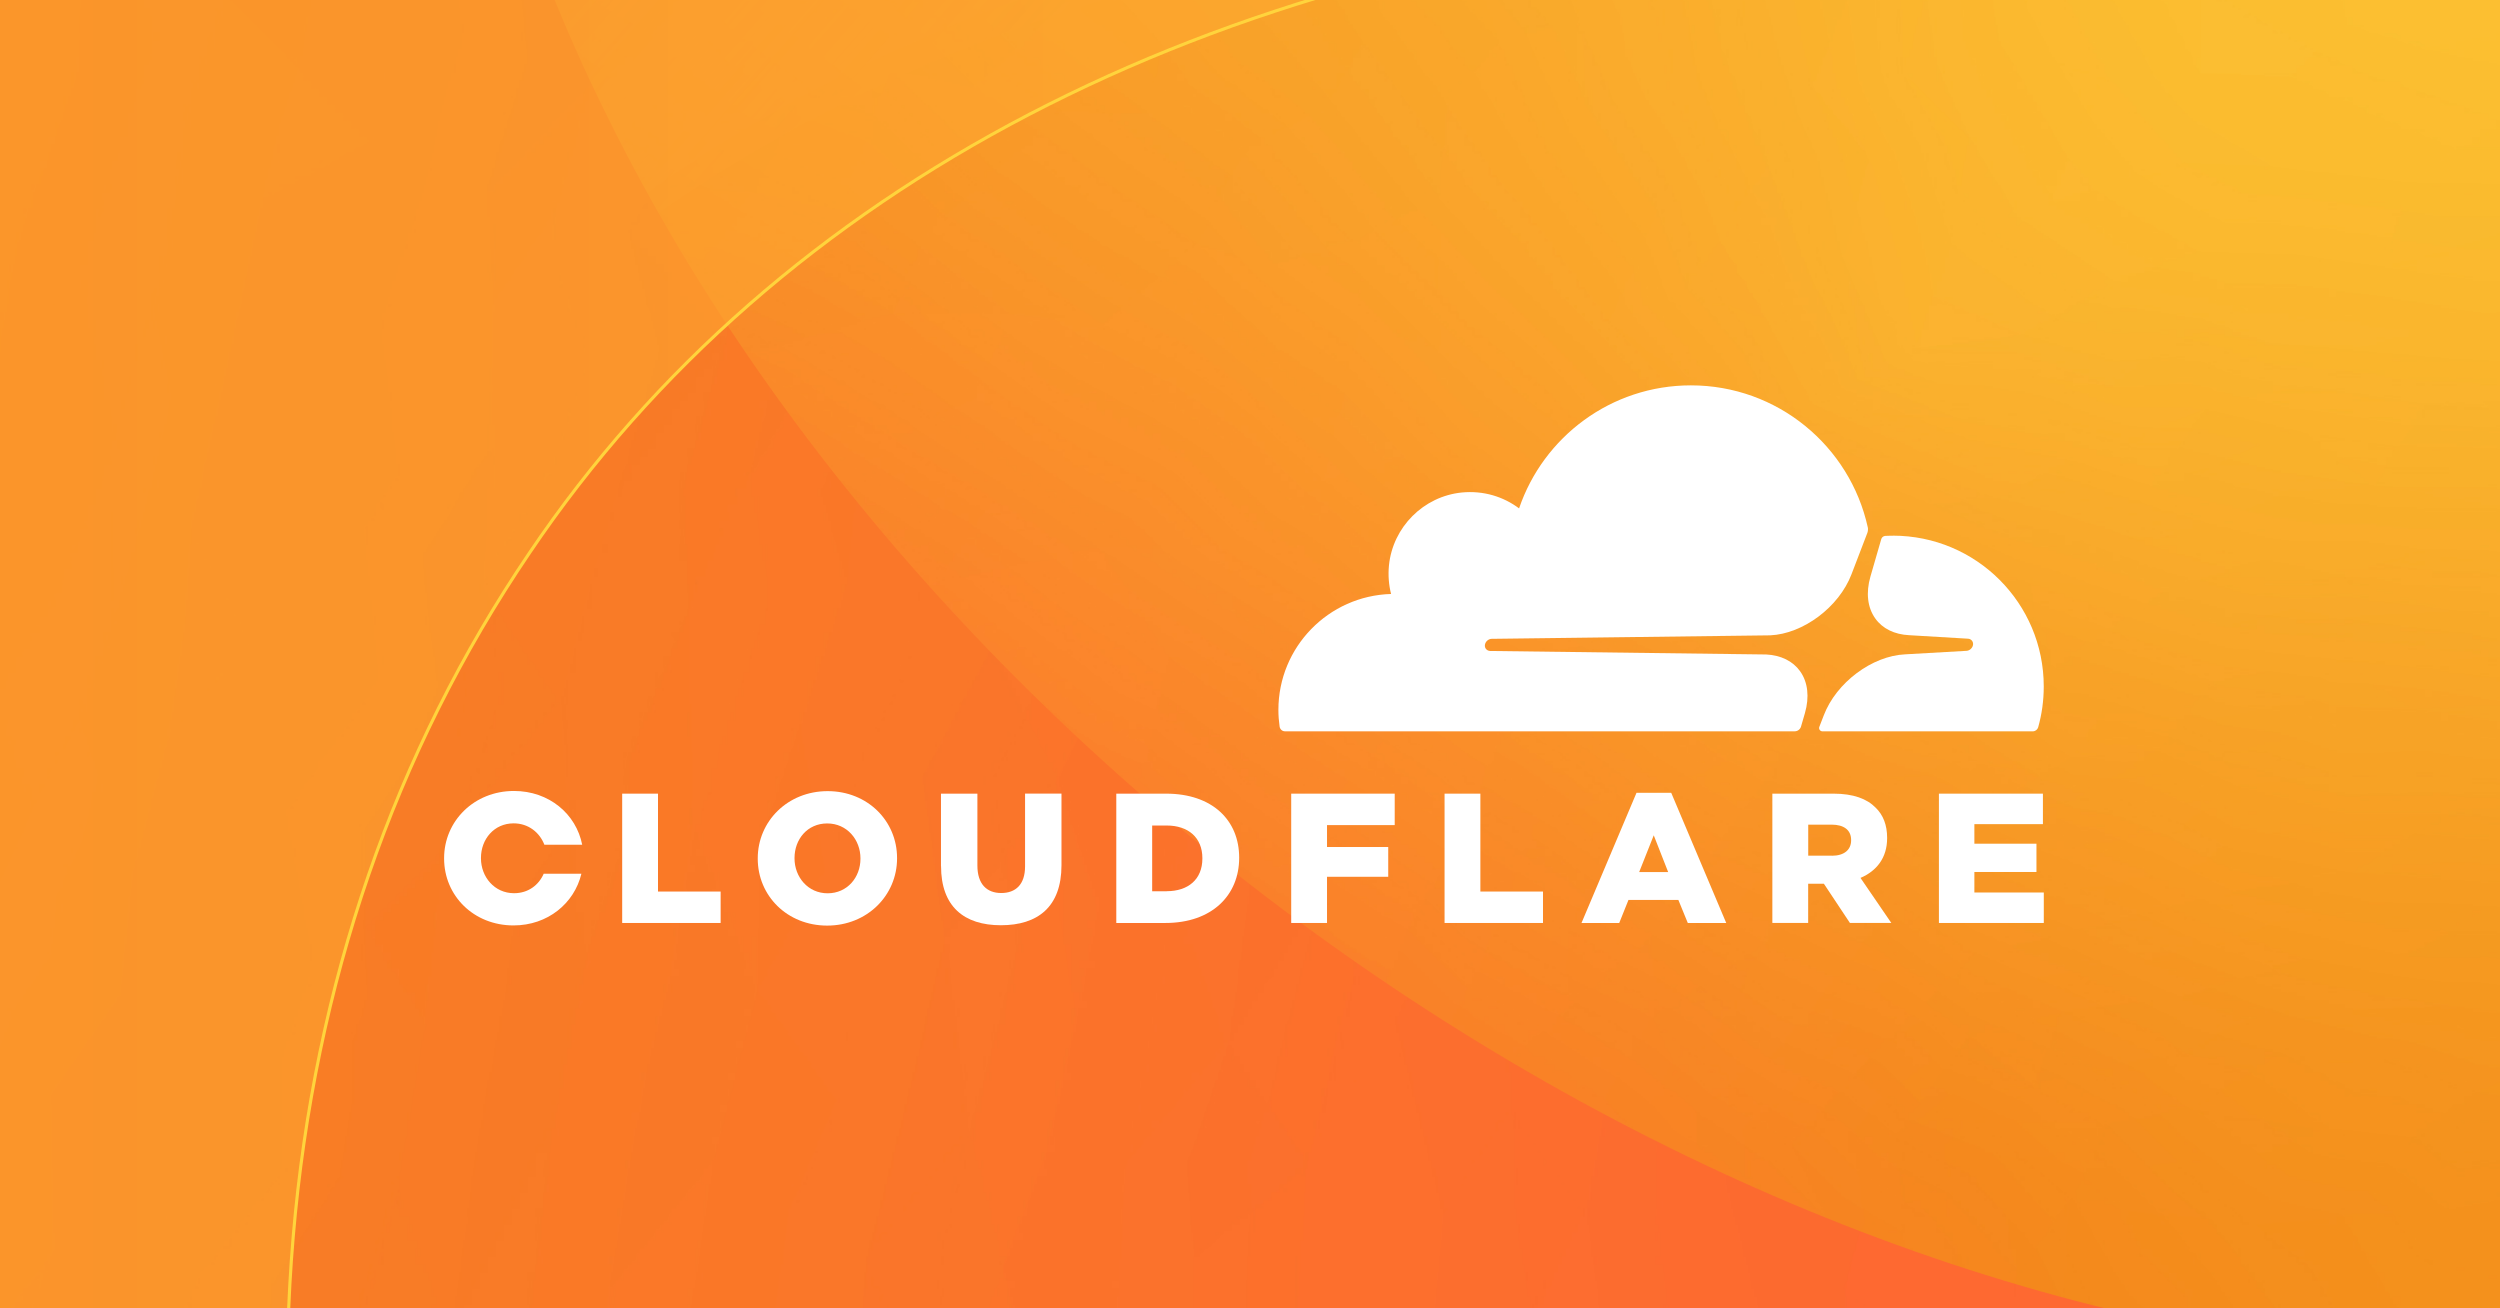 使用Cloudflare Tunnel通过标准http(s)端口访问内网服务器